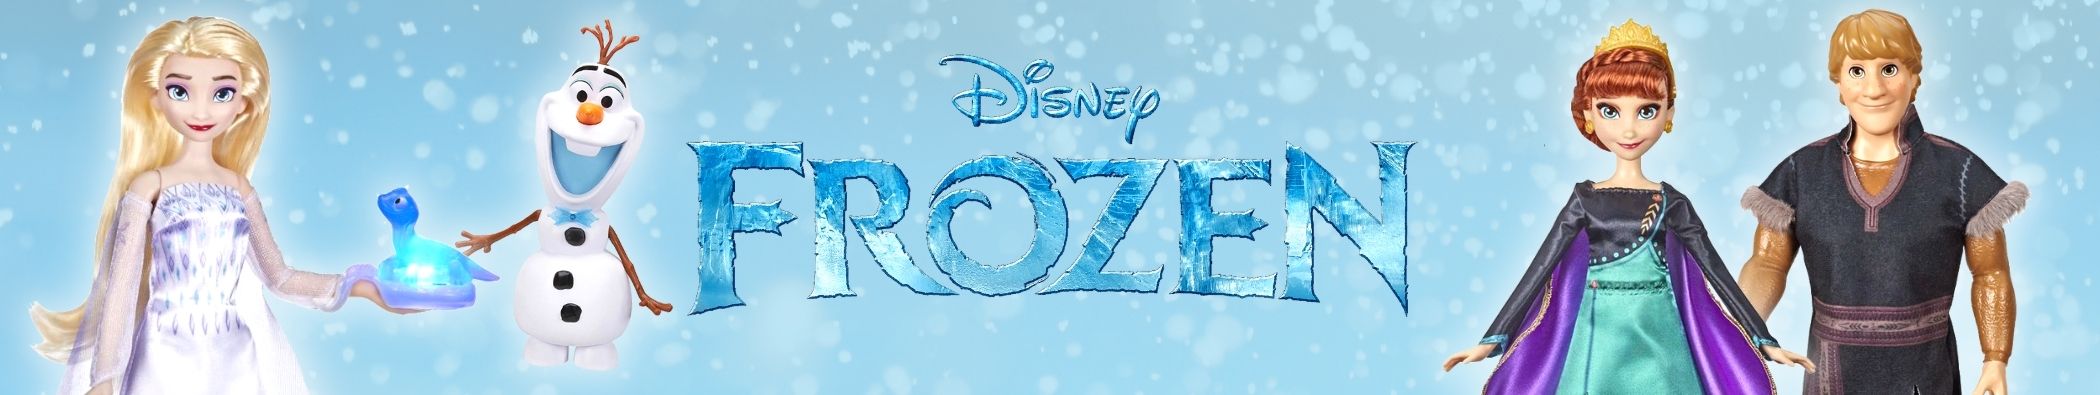 Disfresses Frozen